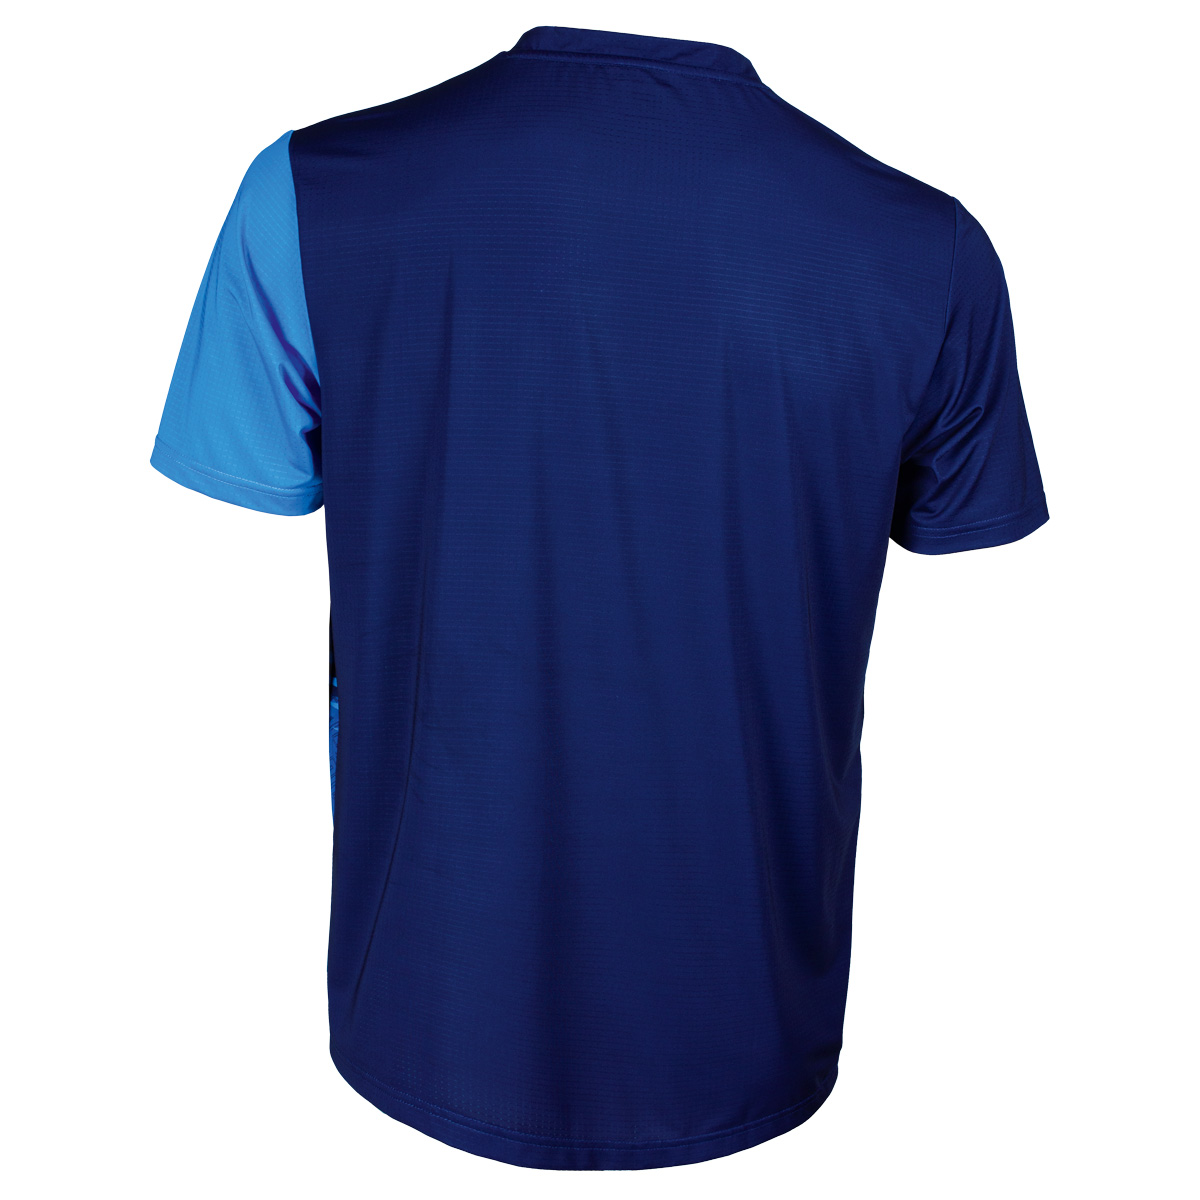 TIBHAR T-Shirt Azur blau/marine S